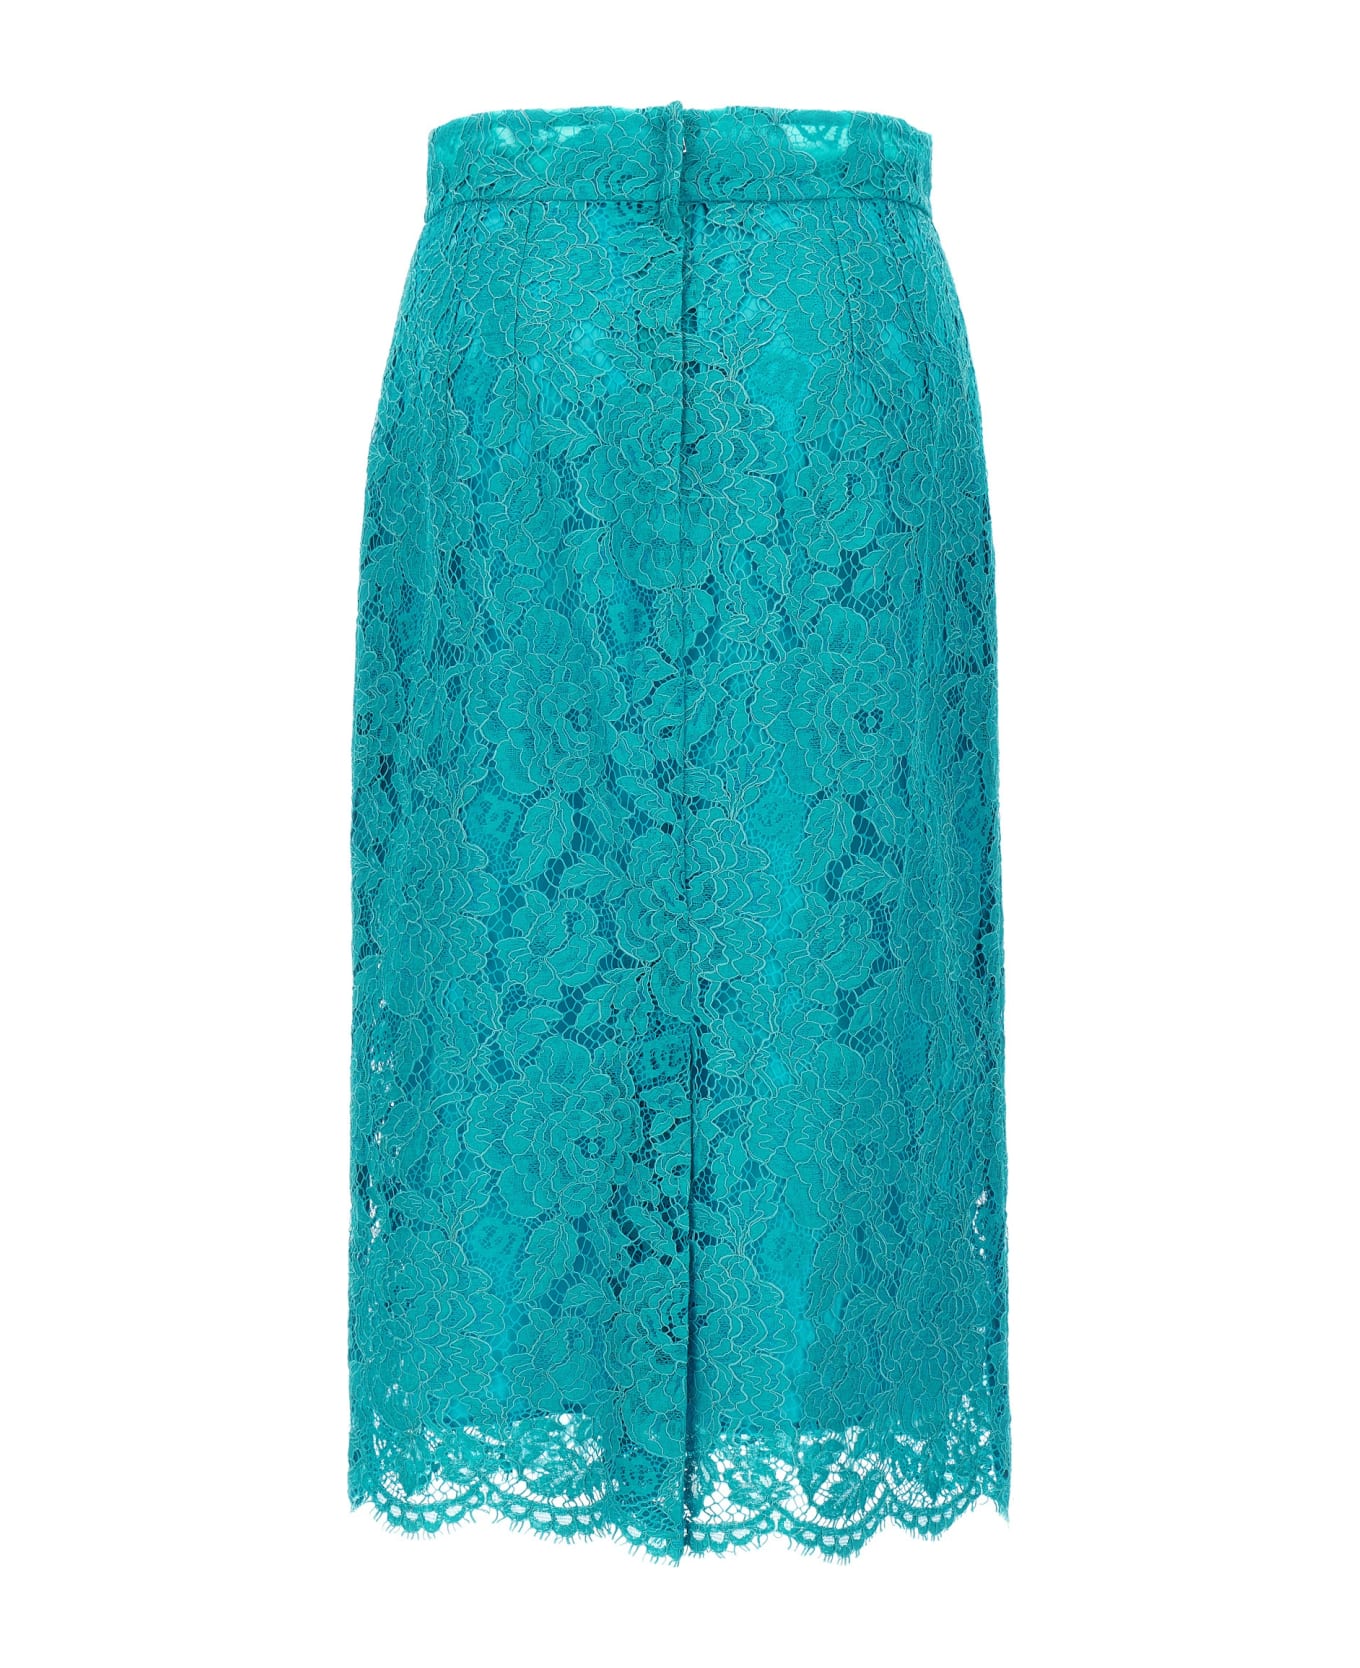 Dolce & Gabbana Lace Skirt - Light Blue スカート